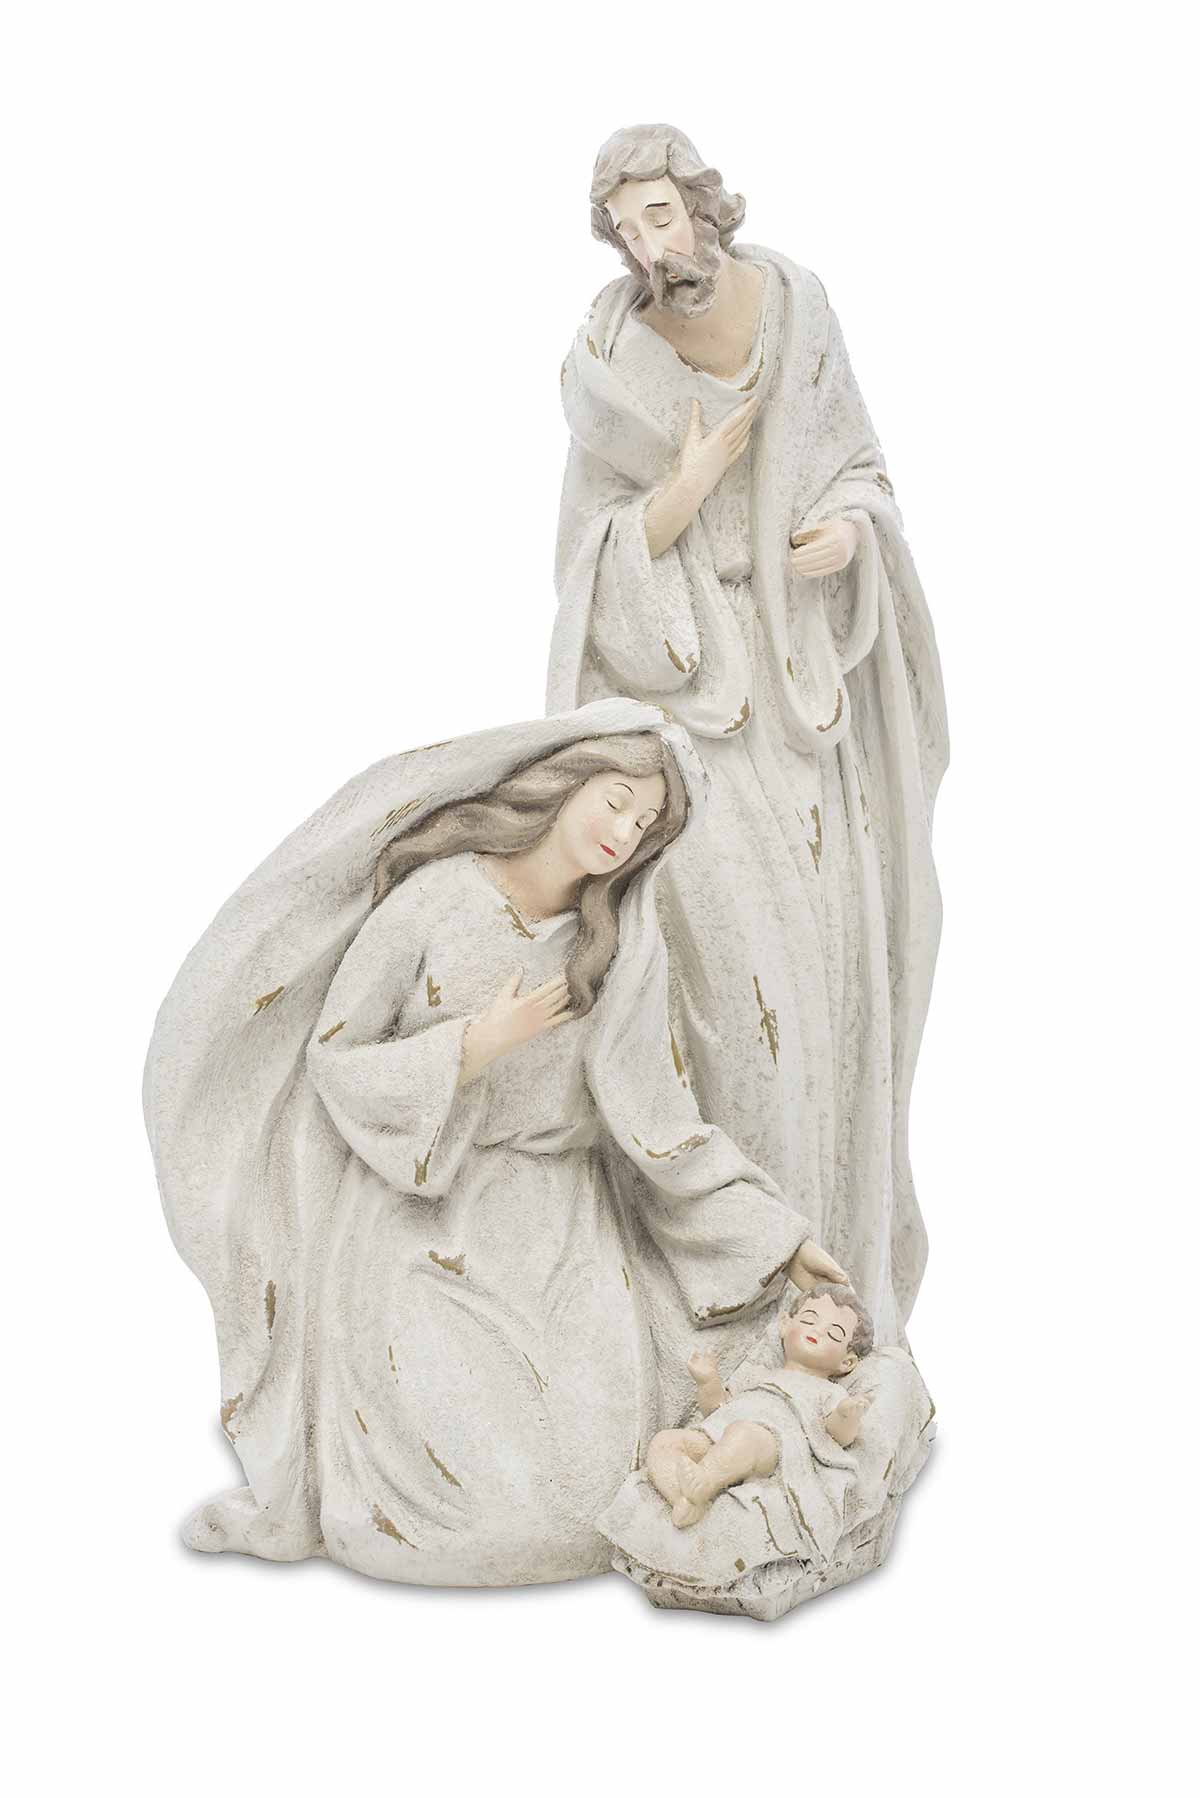 Három darabos, antikolt felületű, kőhatású, pasztell színű betlehem szobor Mária, József és Jézuska alakokkal.